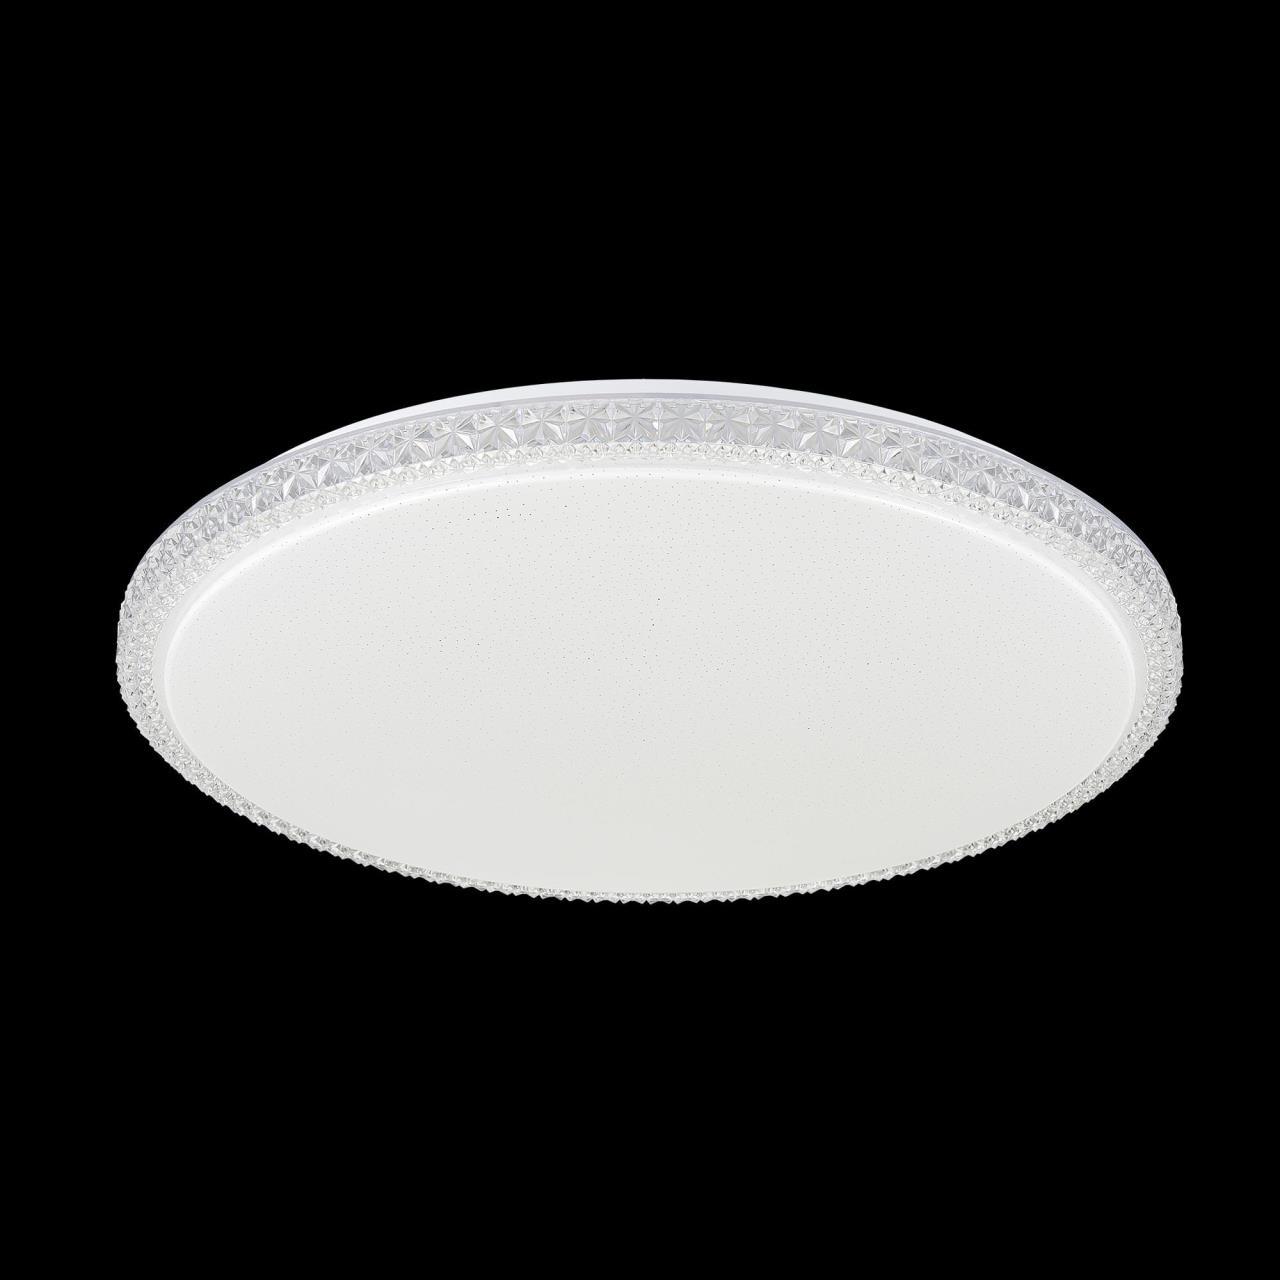 Потолочный светодиодный светильник Citilux Кристалино Слим CL715R720, LED 72W 3000K 5400lm, белый, металл, пластик - фото 3